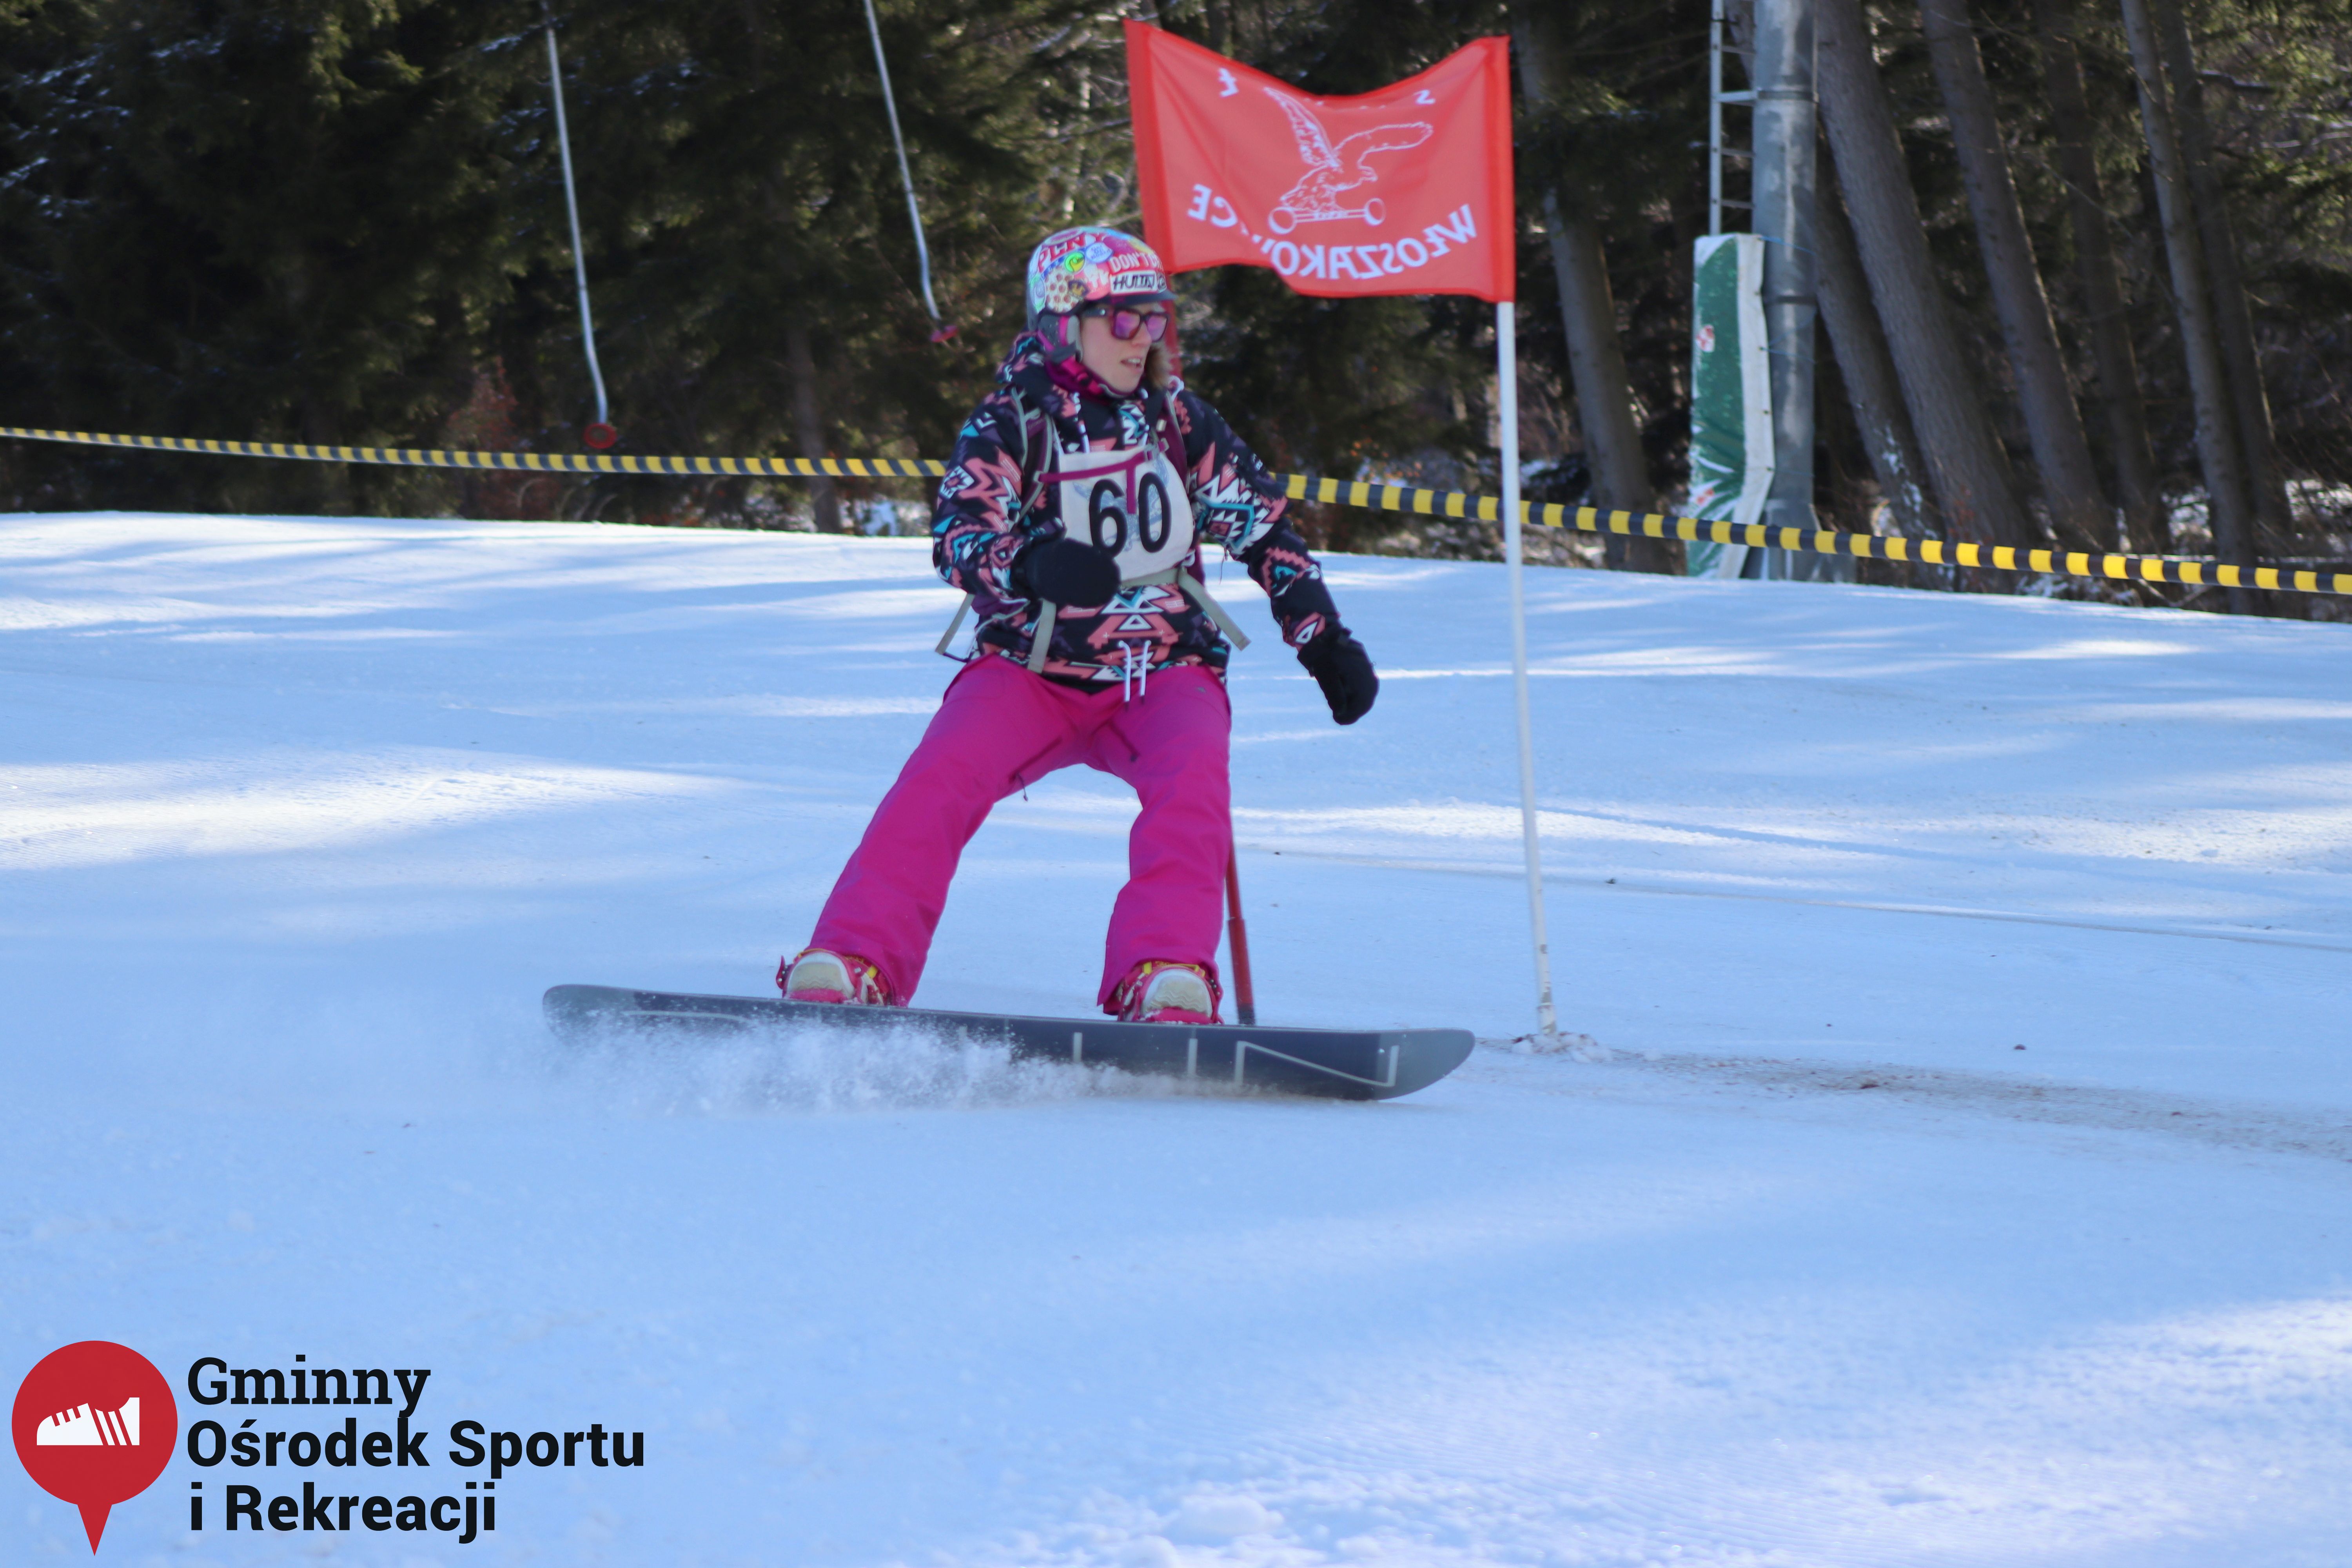 2022.02.12 - 18. Mistrzostwa Gminy Woszakowice w narciarstwie021.jpg - 1,36 MB